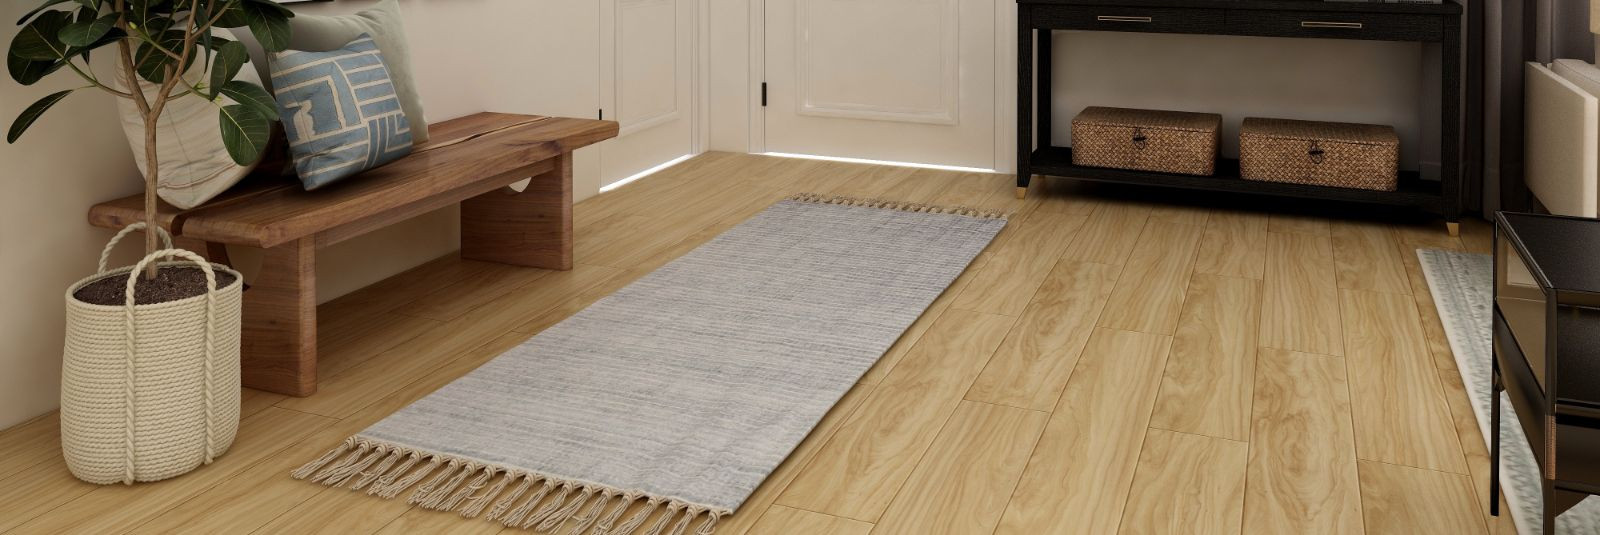 Põrandatööd mängivad olulist rolli igas kodus või äripinnas, määrates ruumi üldise väljanägemise ja mugavuse. Unikaalse ja vastupidava põrandakatte loomine on v